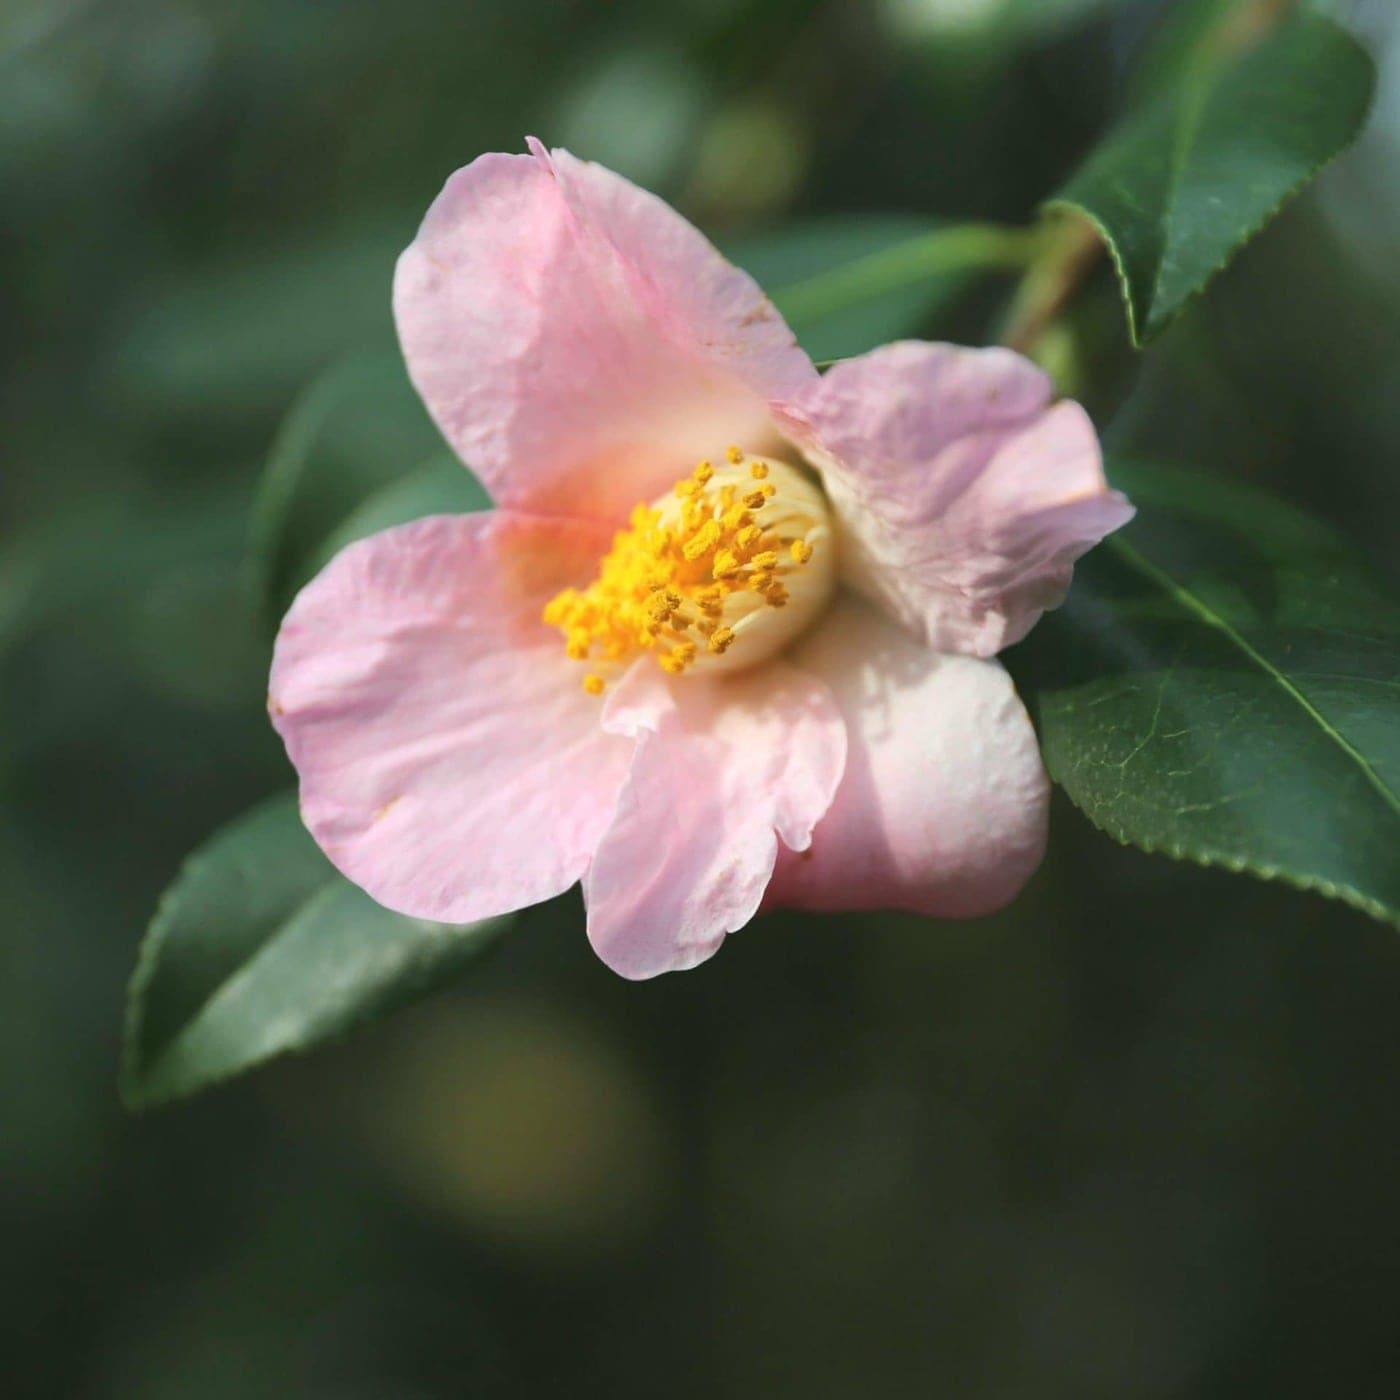 Camellia x williamsii 'J.C. Williams'